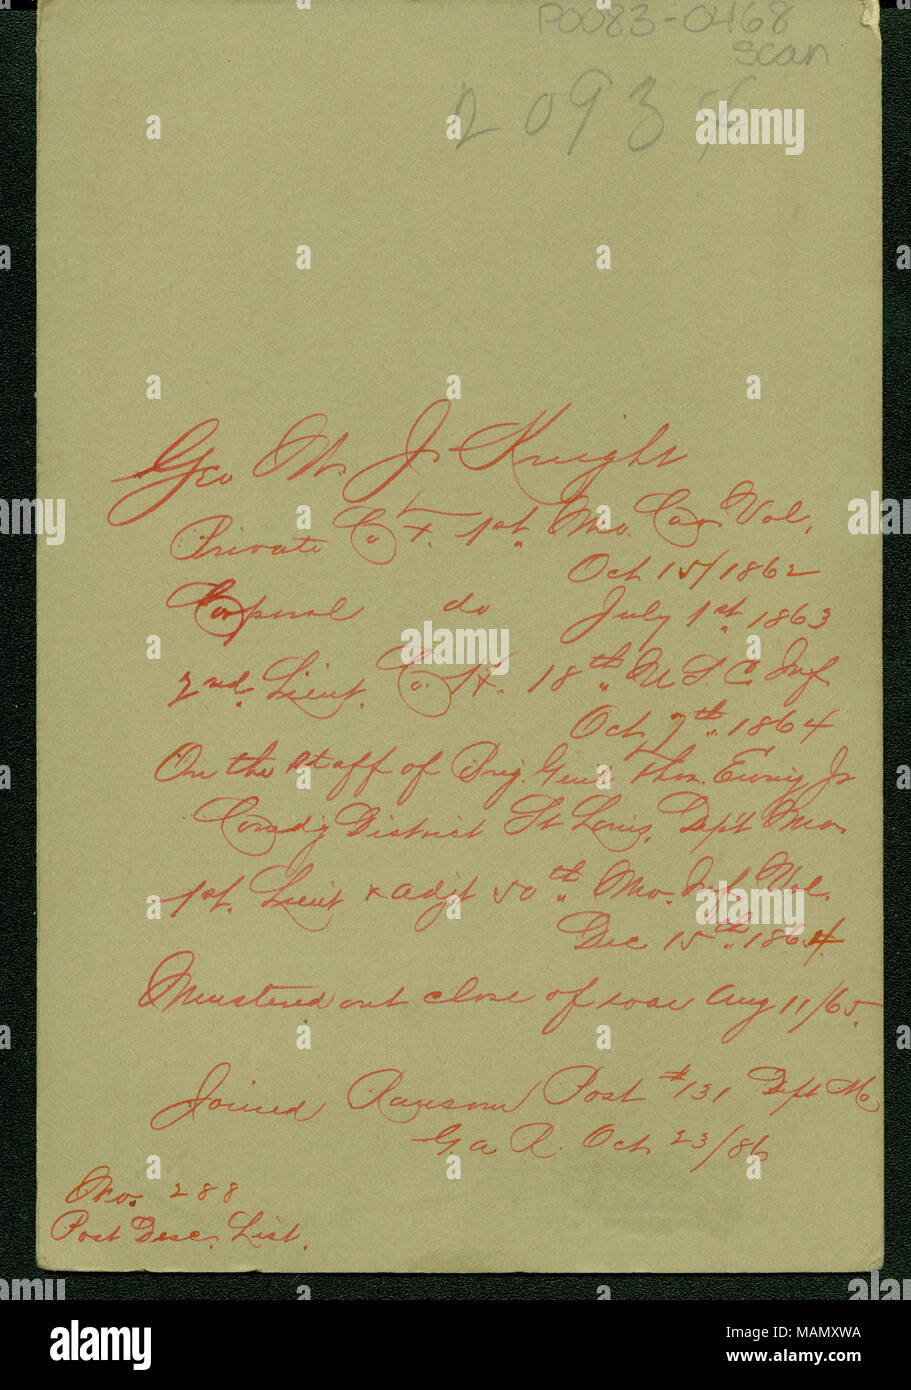 Handschriftlicher Vermerk auf der Aufzeichnung von George M. J. Knight auf der Rückseite von seinem Portrait. 'Geo. M. J. Knight Private Co [?] [unleserlich] Mo. Cav. [?] Vol. Corporal tun [?] Okt 15/1862 vom 1. Juli 1863 2. lieut. Co H. 18 USC Inf Oct 7 1864 Auf dem Personal von Brig. Genl Wm. Euny Jr. [?] Befehlenden [unleserlich] St. Louis [unleserlich] Mo [?] [unleserlich] Lieut. Adjt 50. Mo. inf Vol 15. Dez. 1864 versammelte sich in der Nähe von [unleserlich] Aug 11/65. Joined Lösegeld Beitrag #131 [unleserlich] Mo gar Okt 23/86 [unleserlich] 288 Post Gar [?] Liste." Titel: handschriftliche Anmerkung auf der Aufzeichnung von George M. J. K Stockfoto